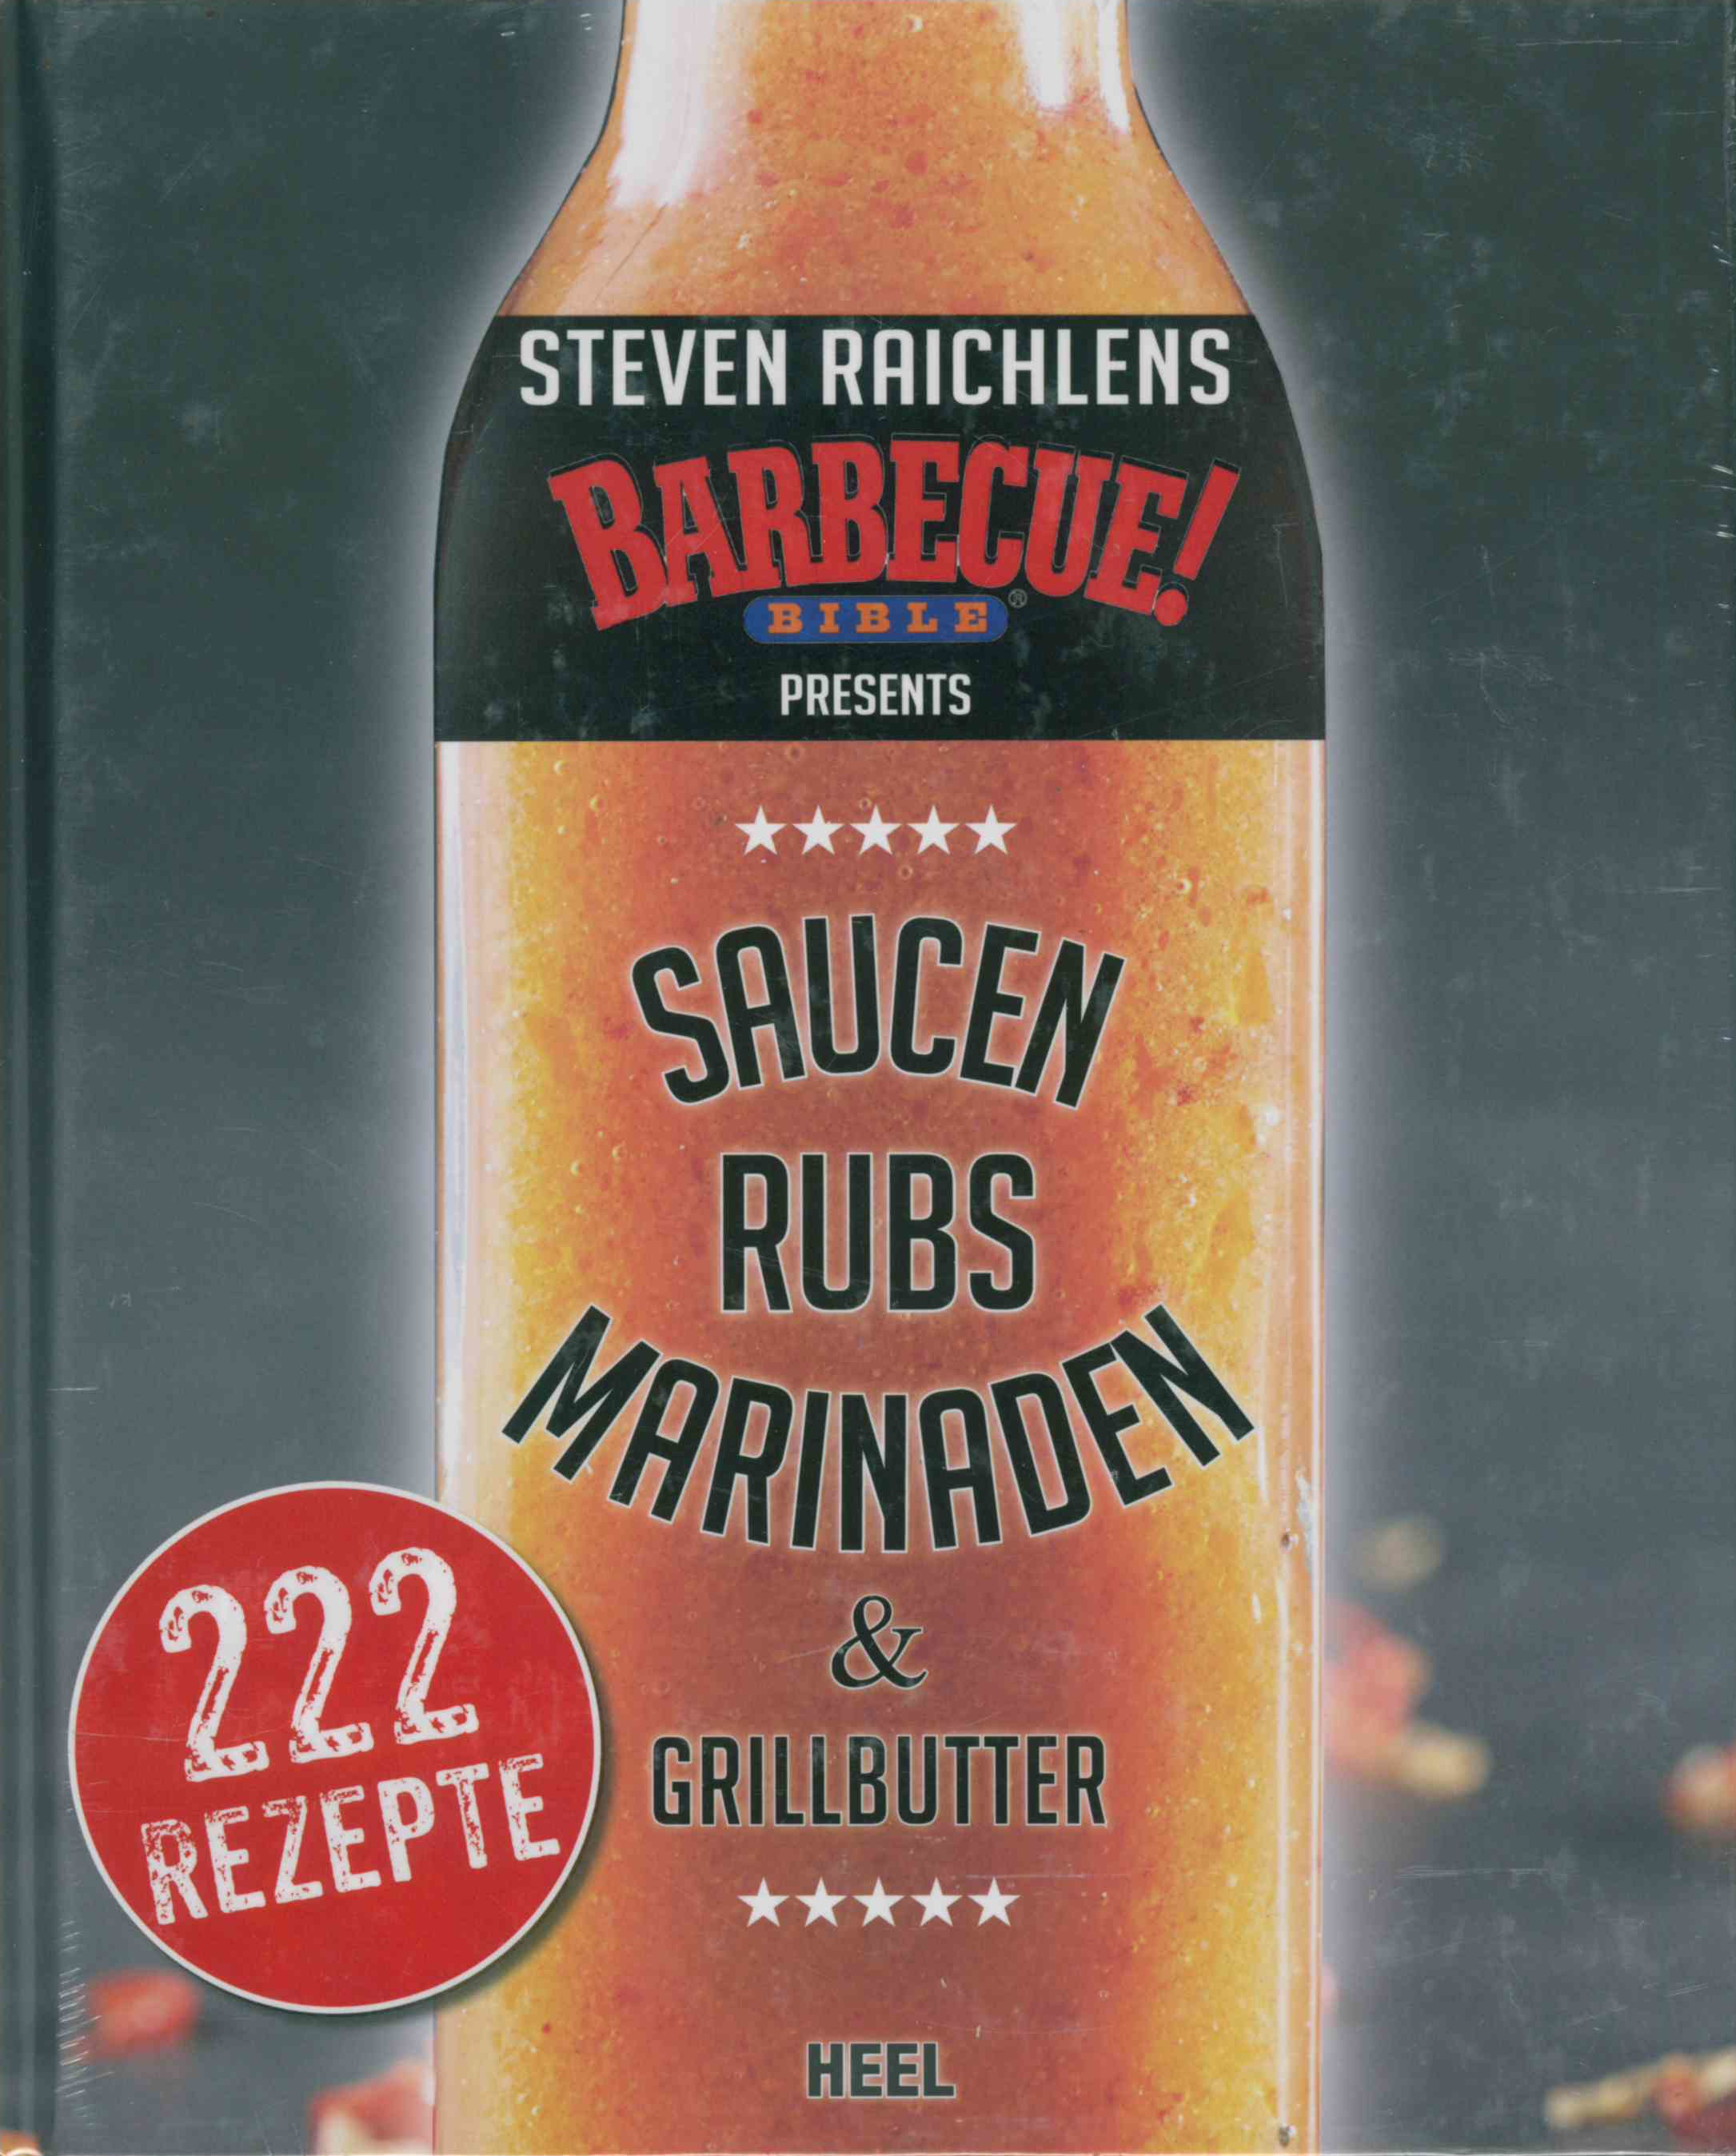 Steven Raichlens | Barbecue Bible